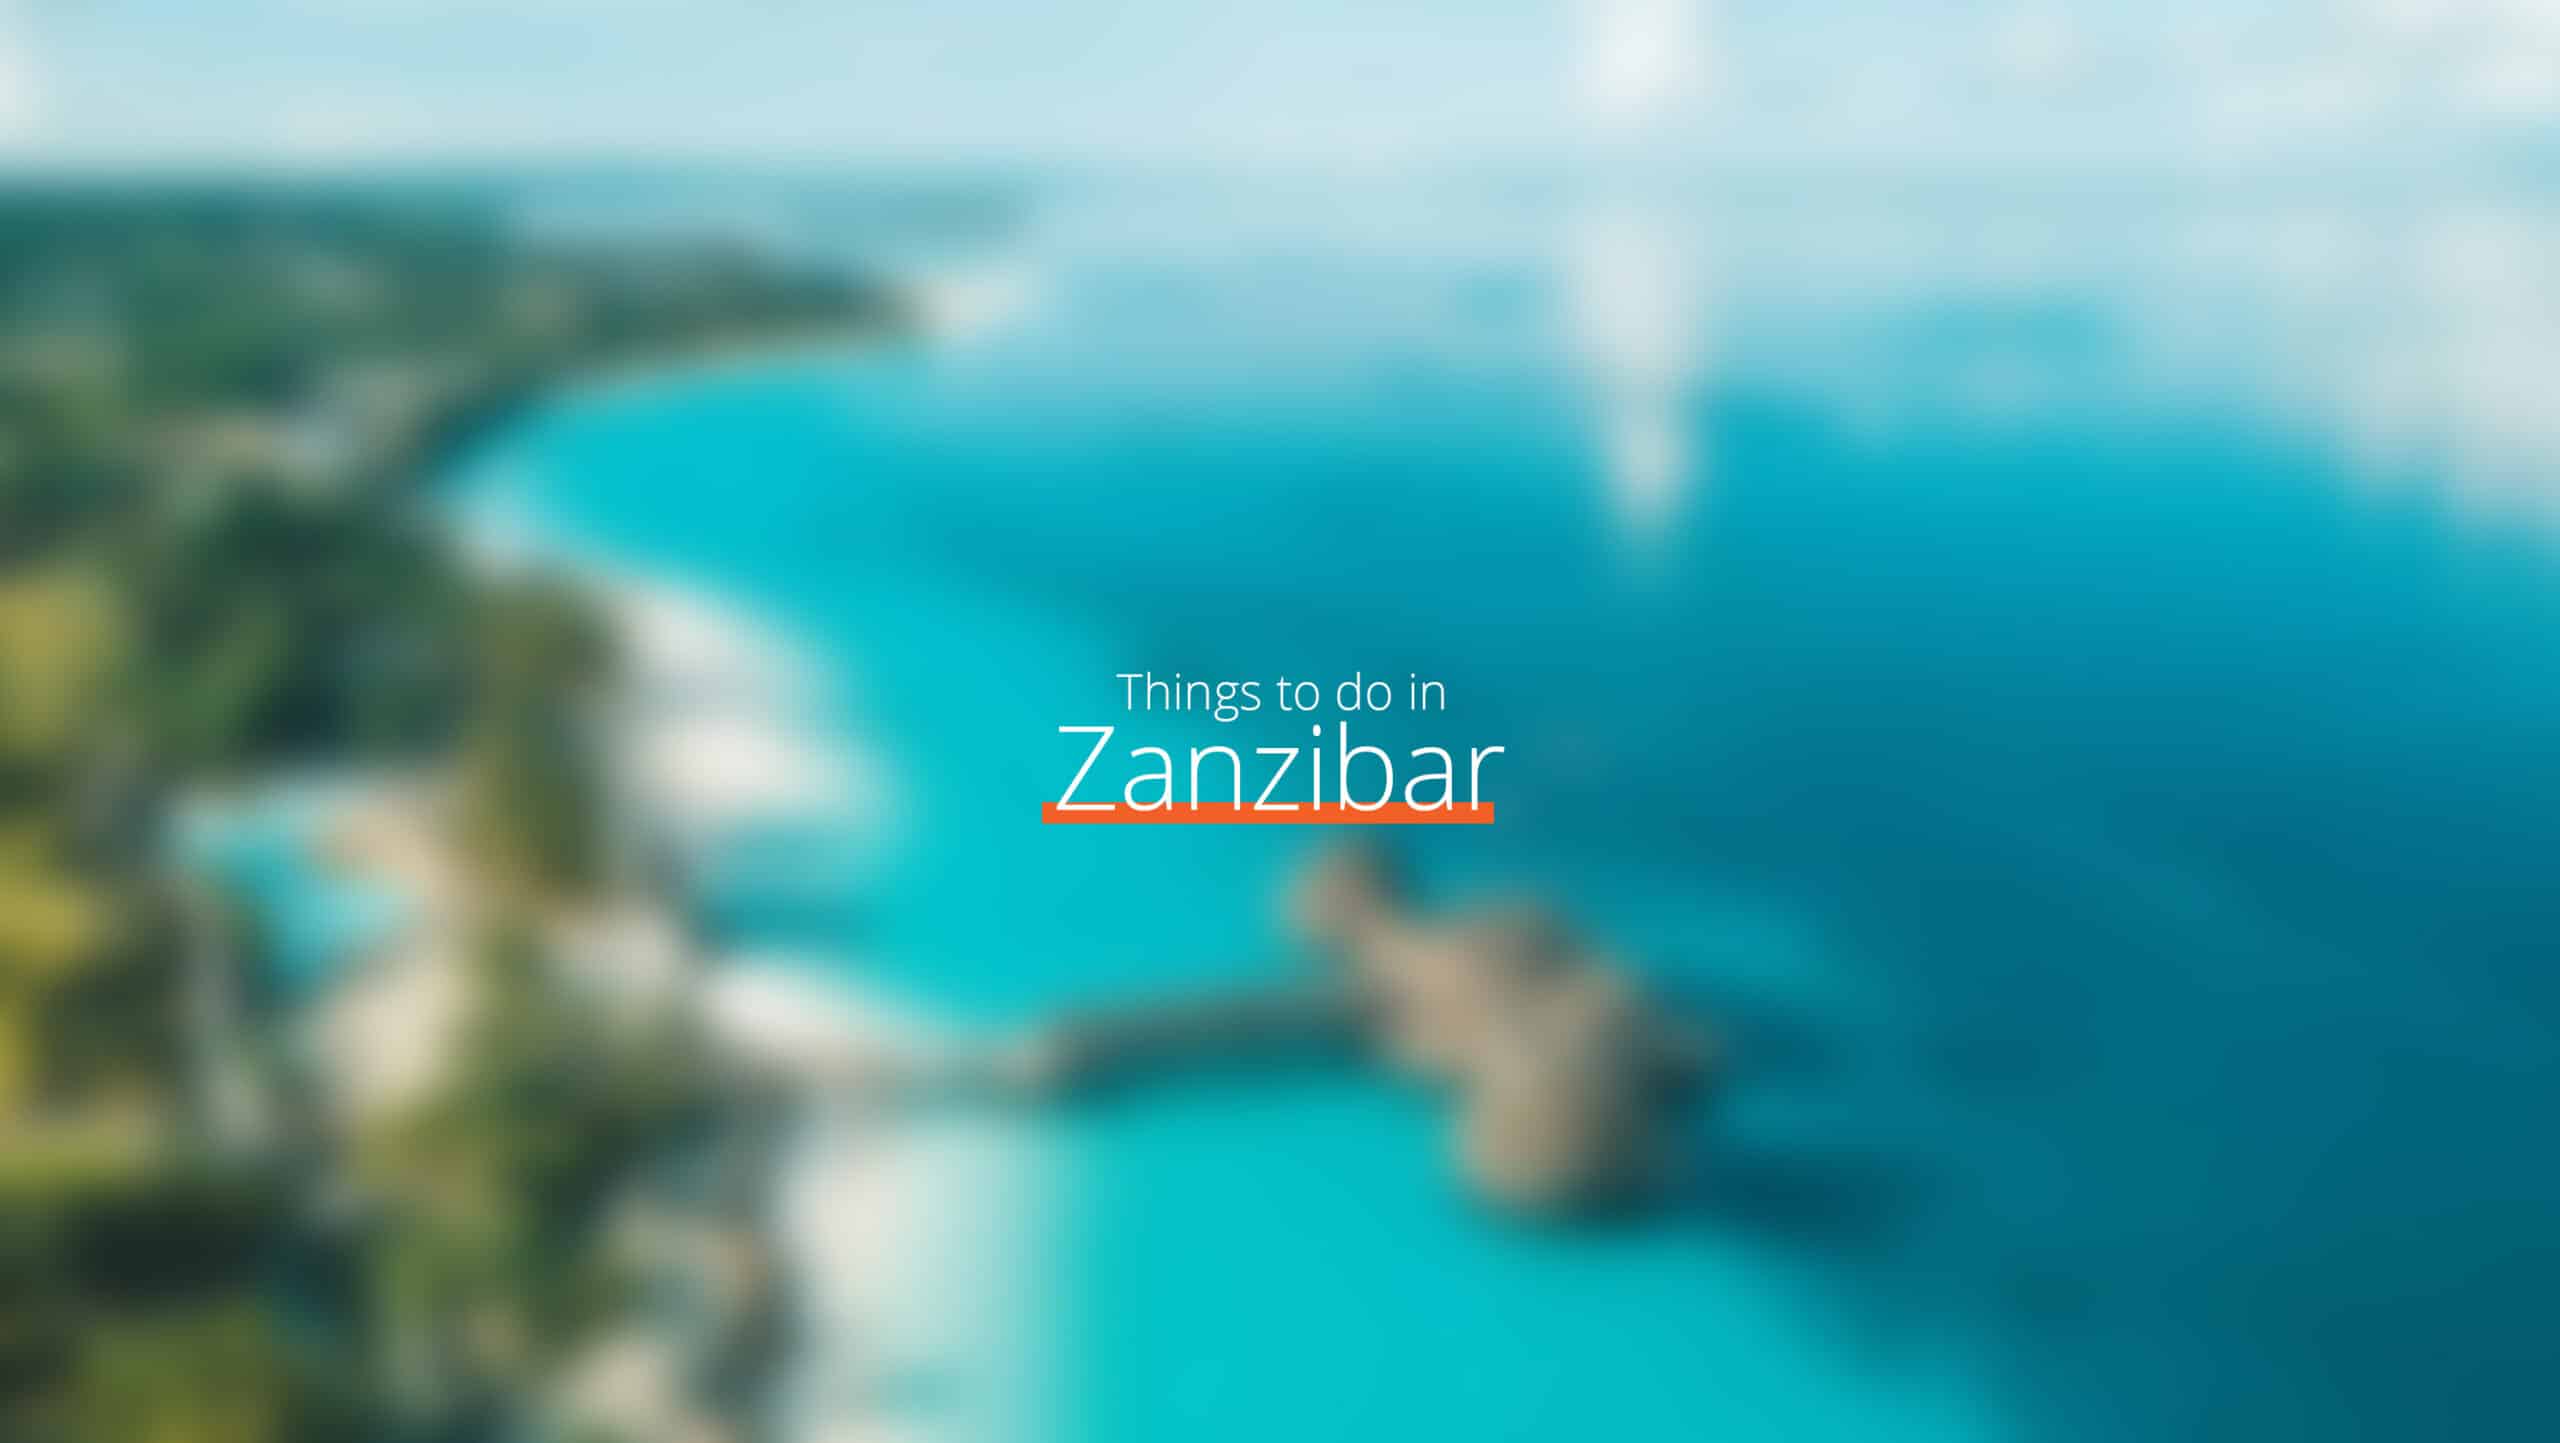 坦桑尼亚 - zanzibar scaled - 健康